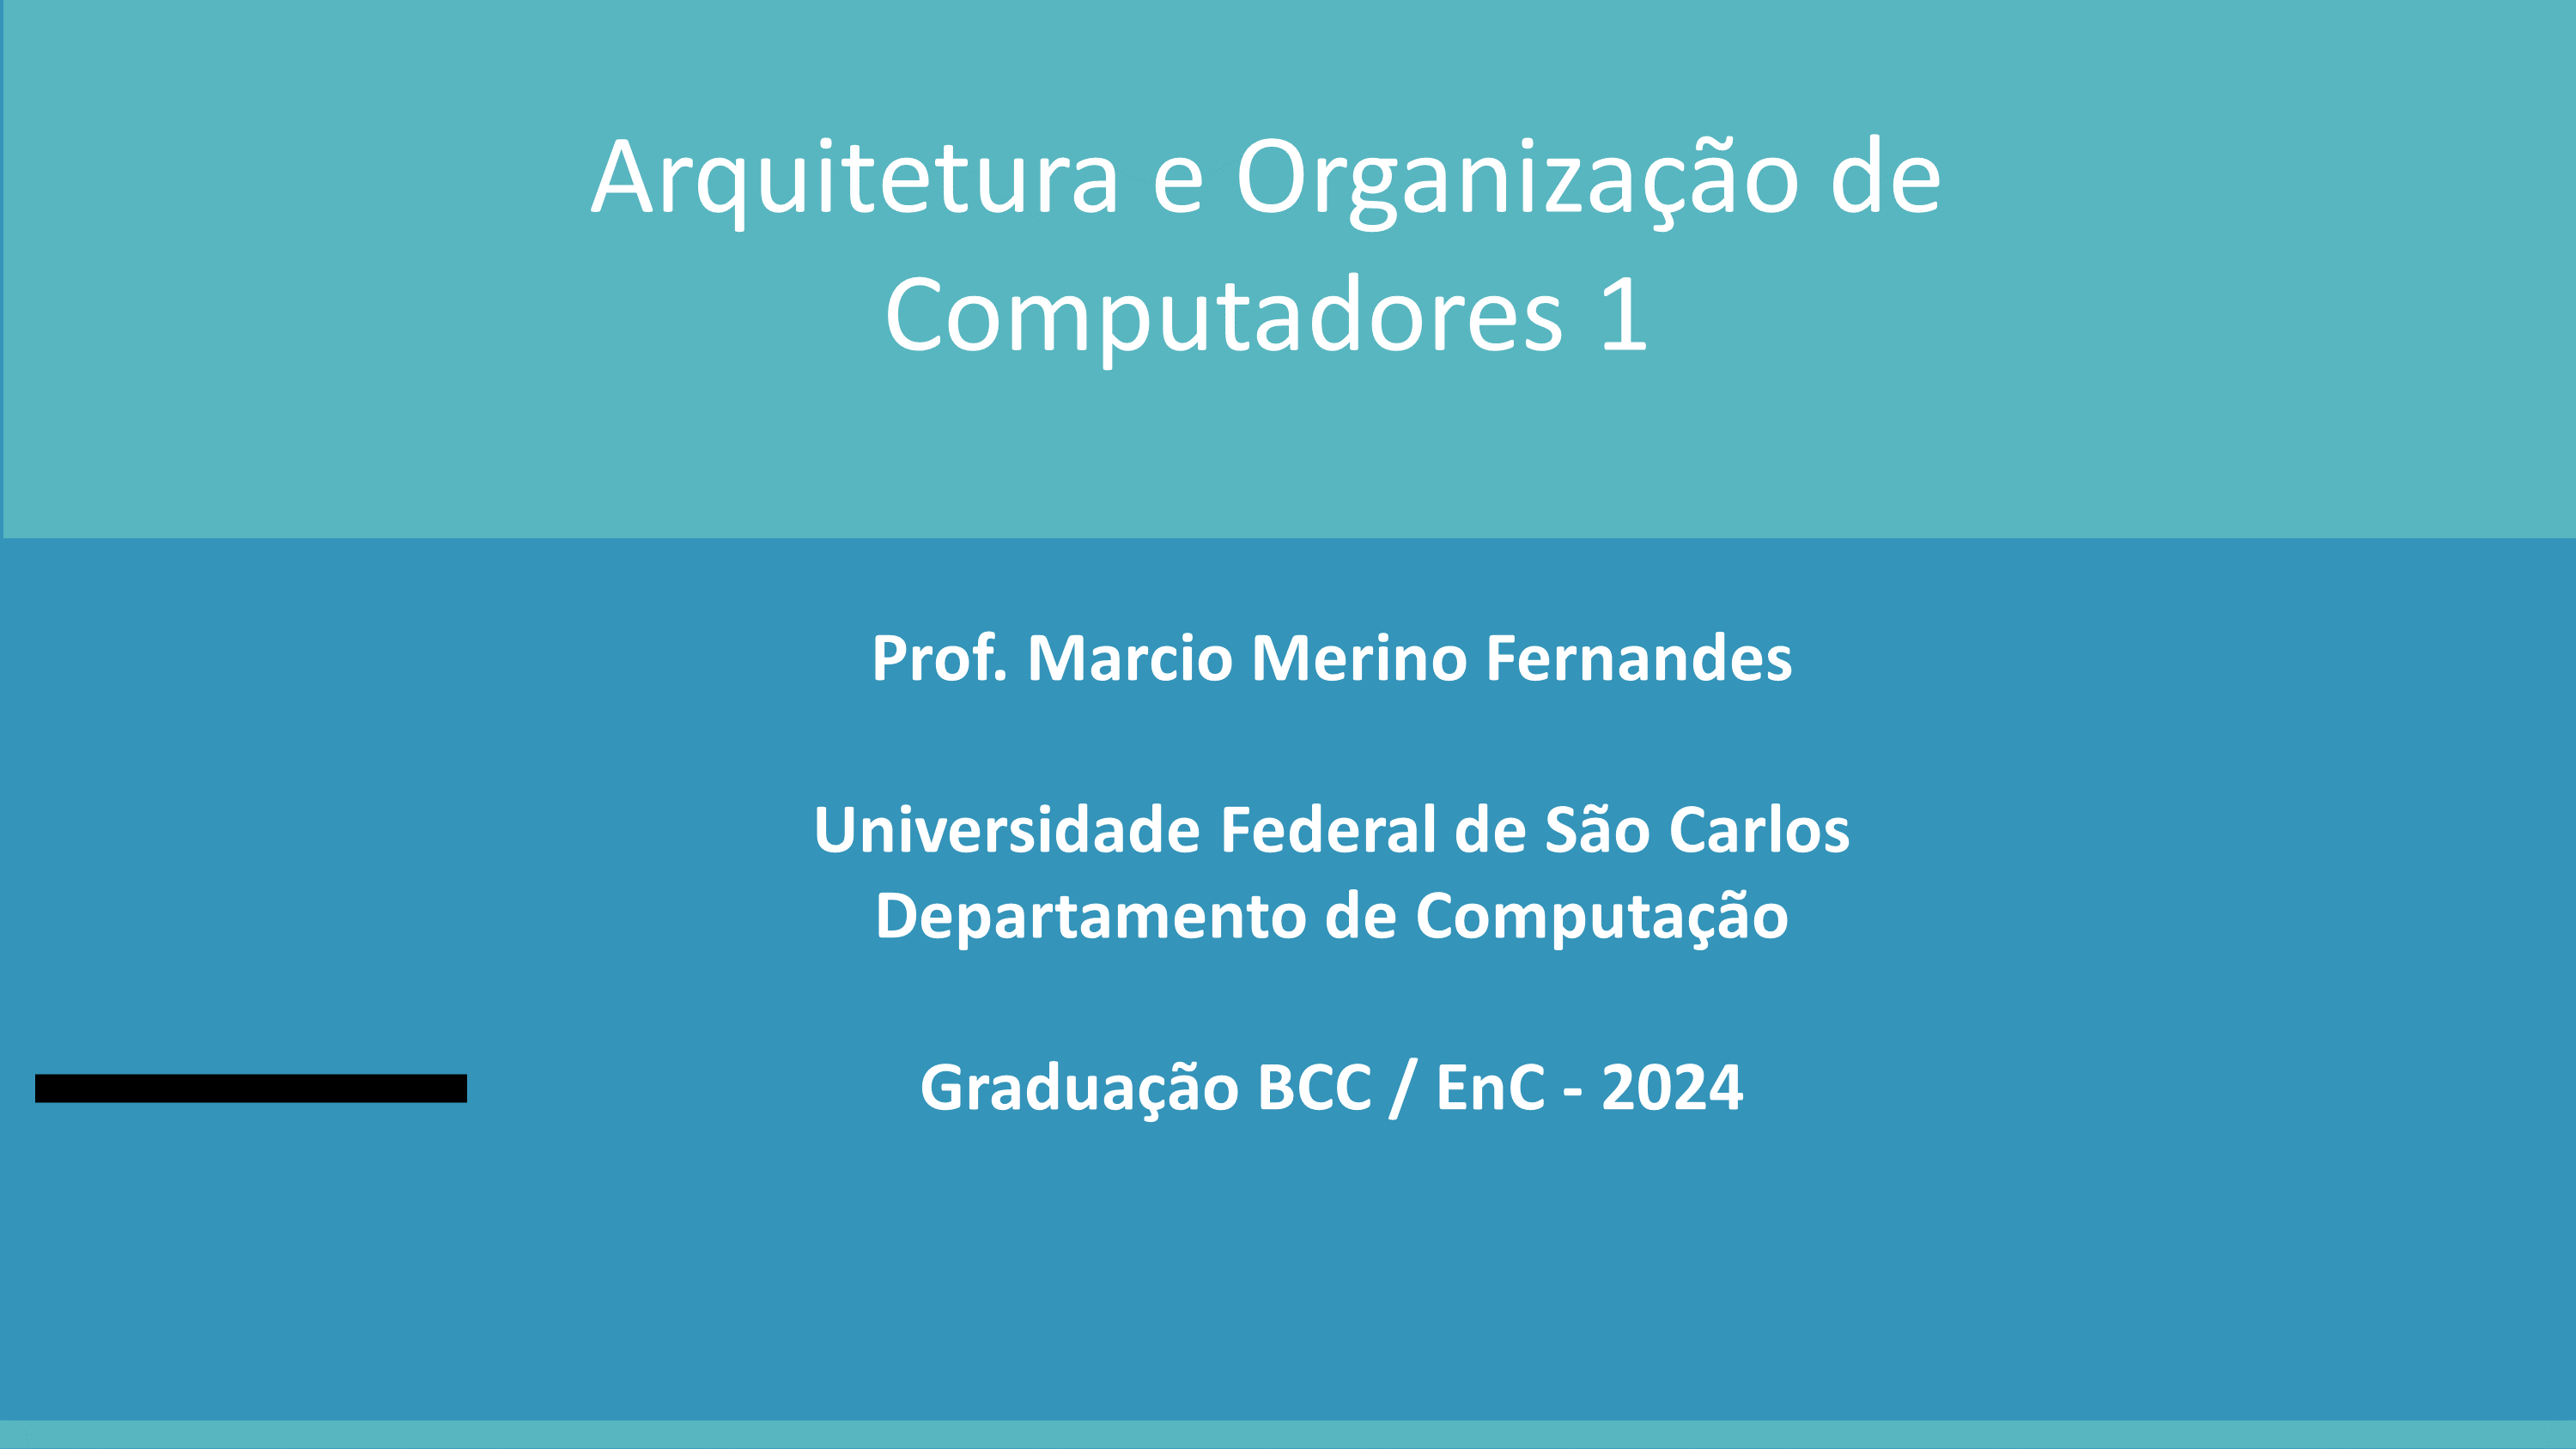 ARQUITETURA E ORGANIZAÇÃO DE COMPUTADORES 1 - Turmas A/B